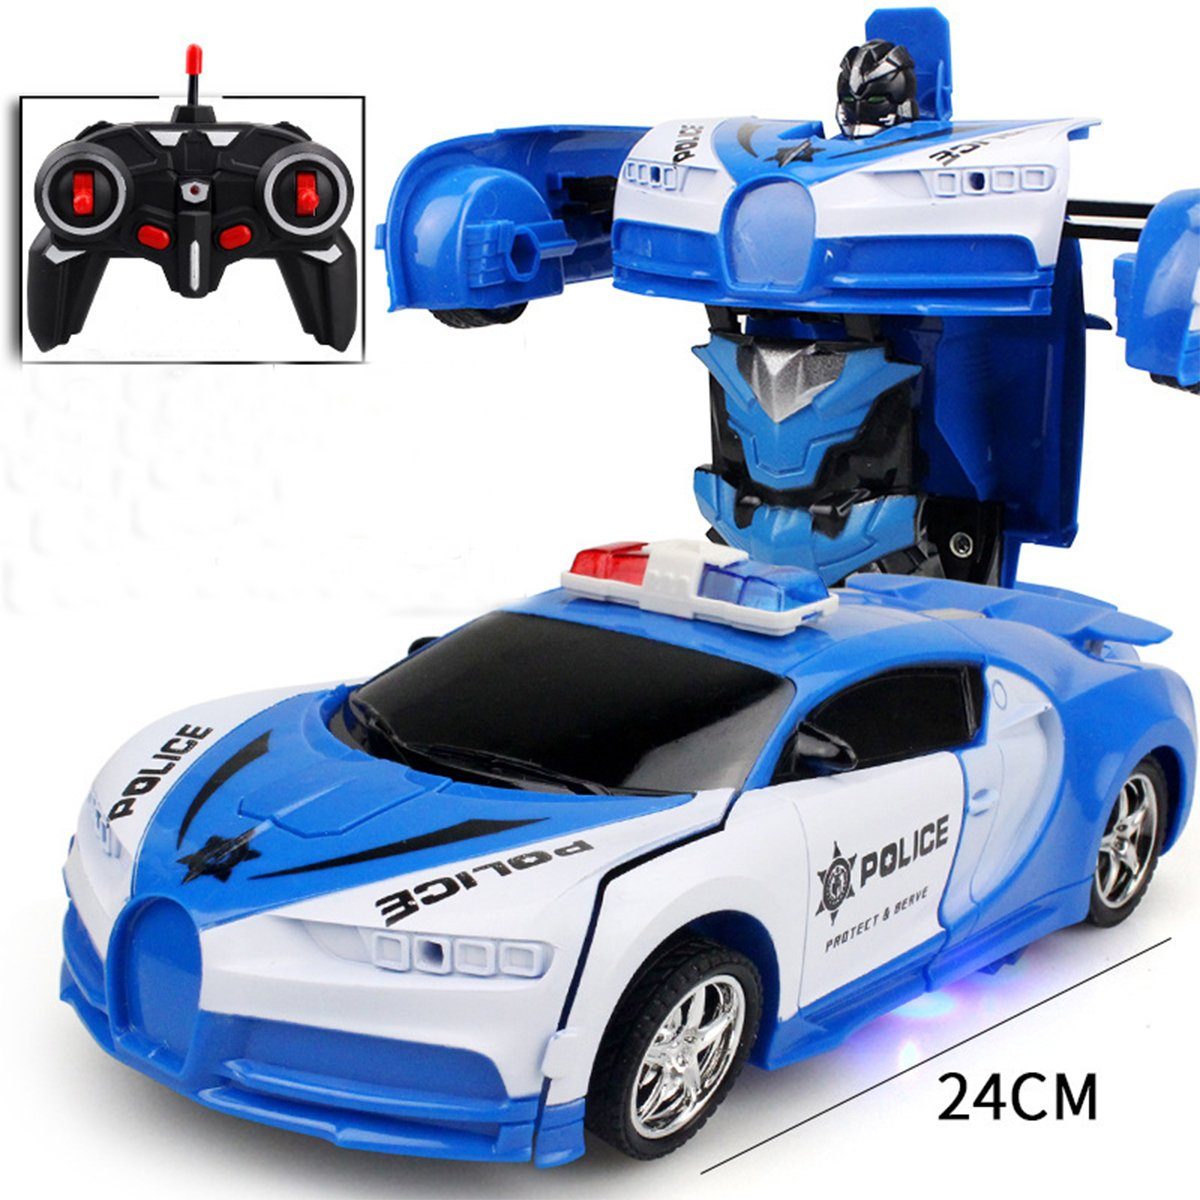 XDeer Spielzeug-Auto 1:18 Ein-Tasten-Deformations-Fernbedienung RC-Auto, Deformations-Auto-Roboter-Modellauto-Fernbedienungsspielzeug